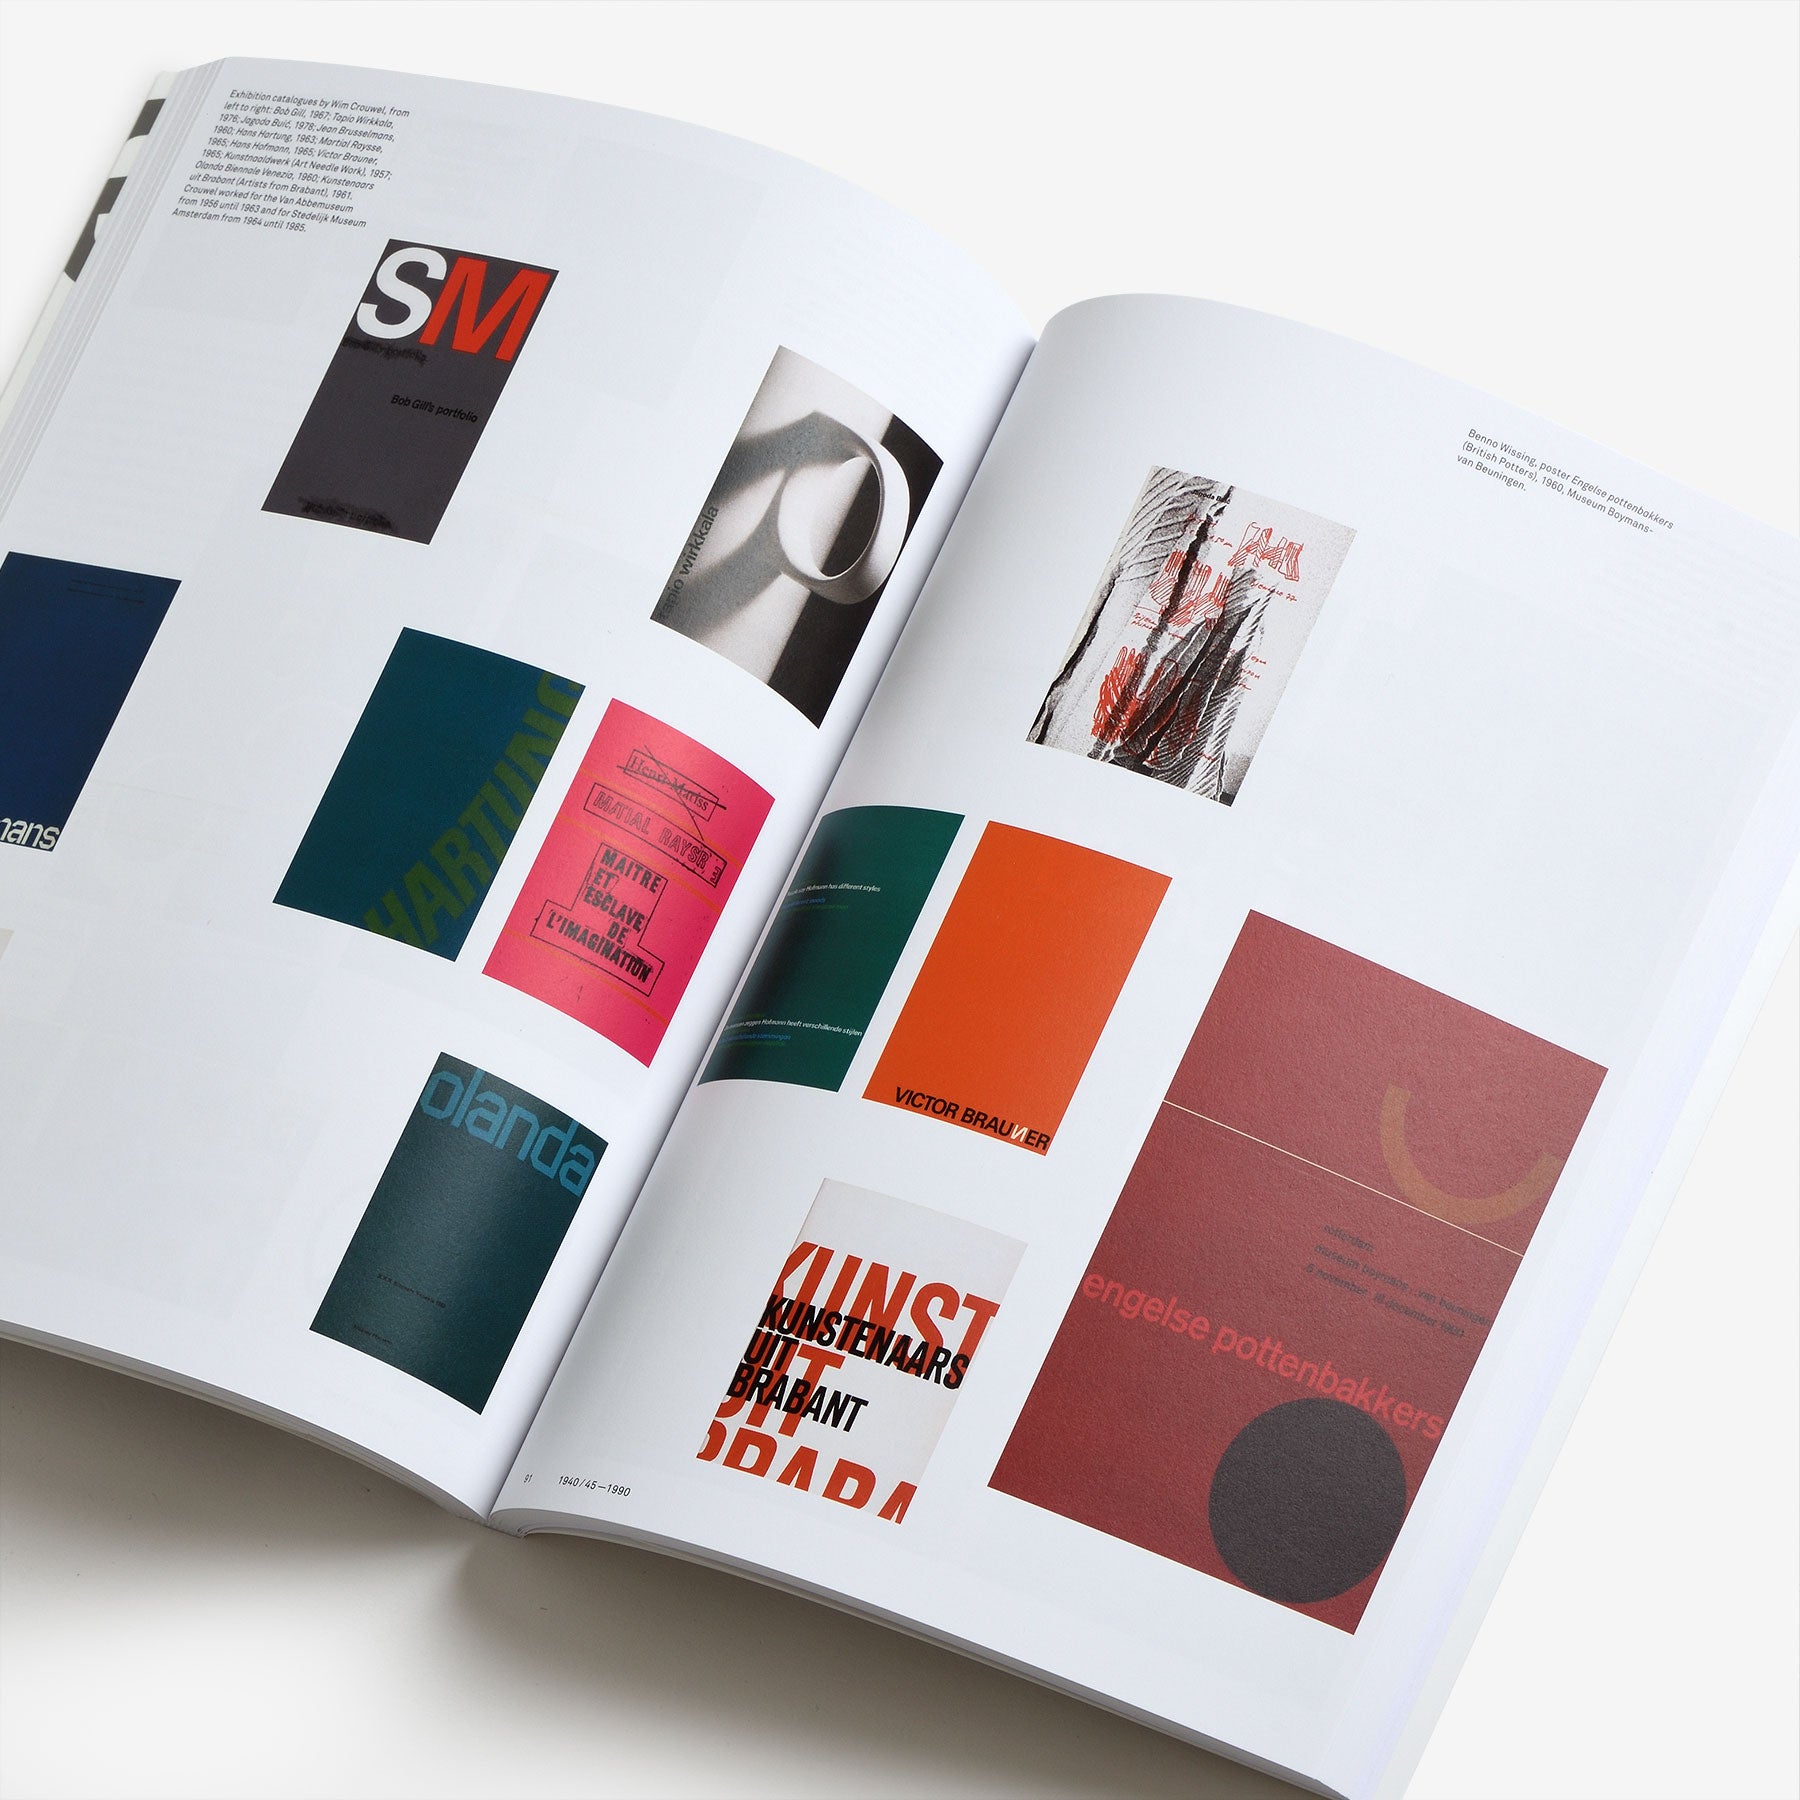 Modernism: In Print - Dutch Graphic Design 1917-2017